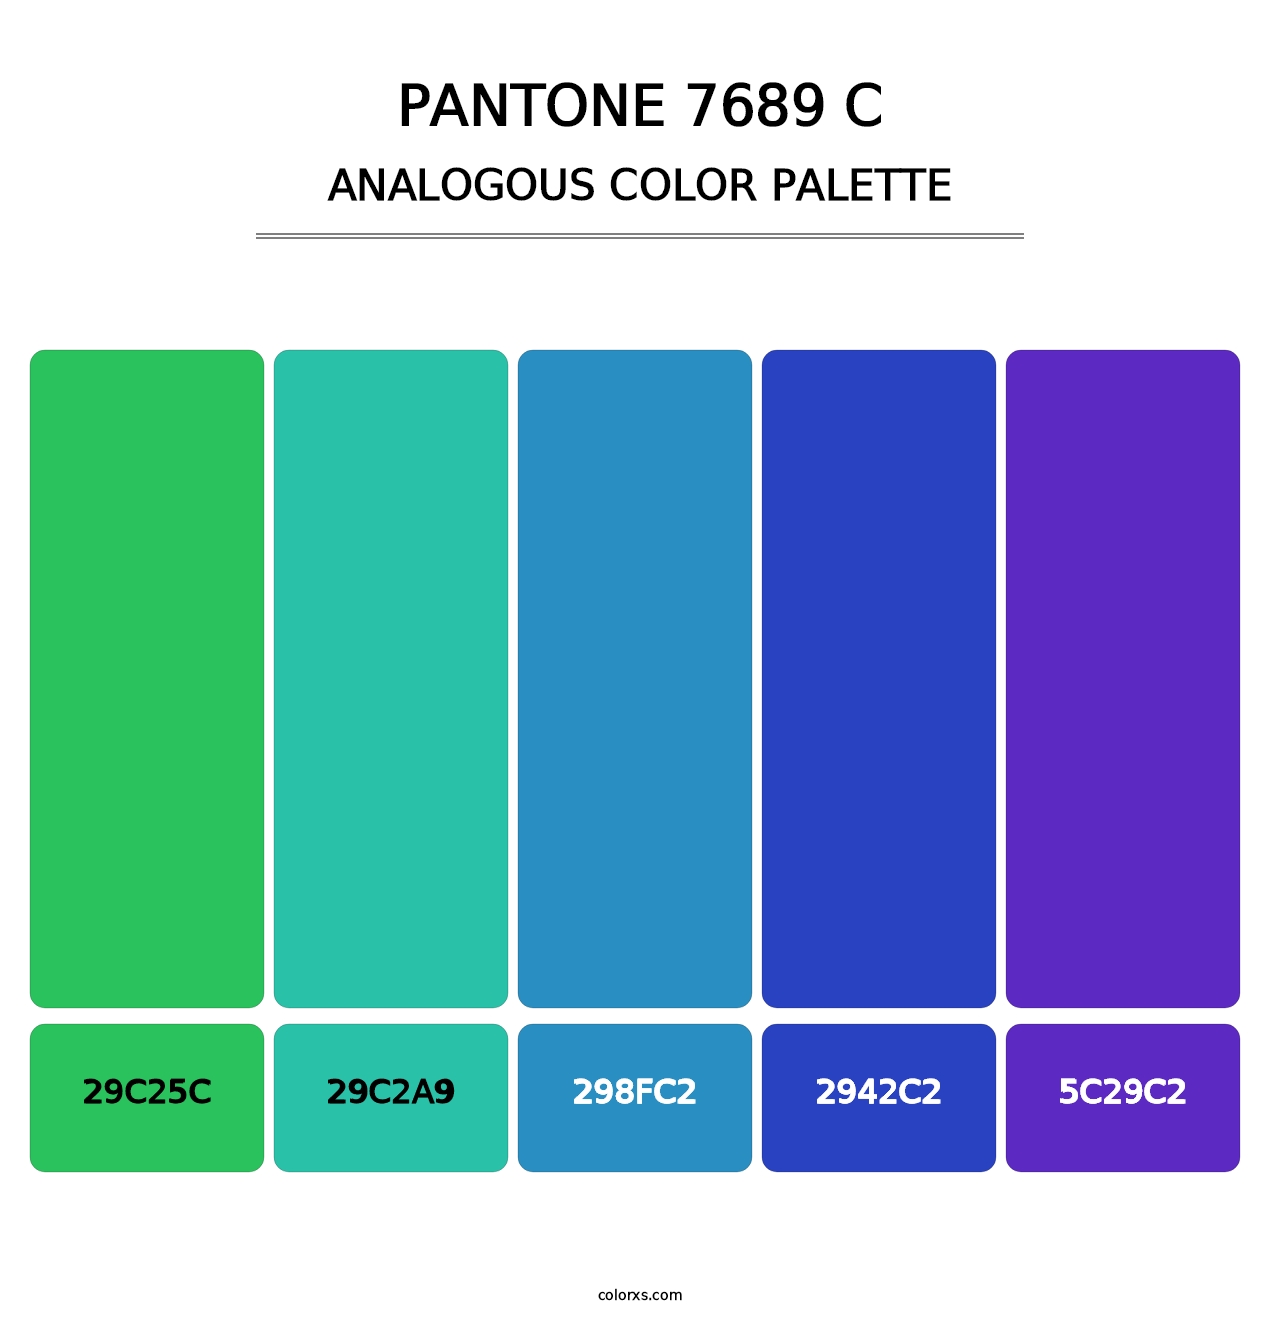 PANTONE 7689 C - Analogous Color Palette